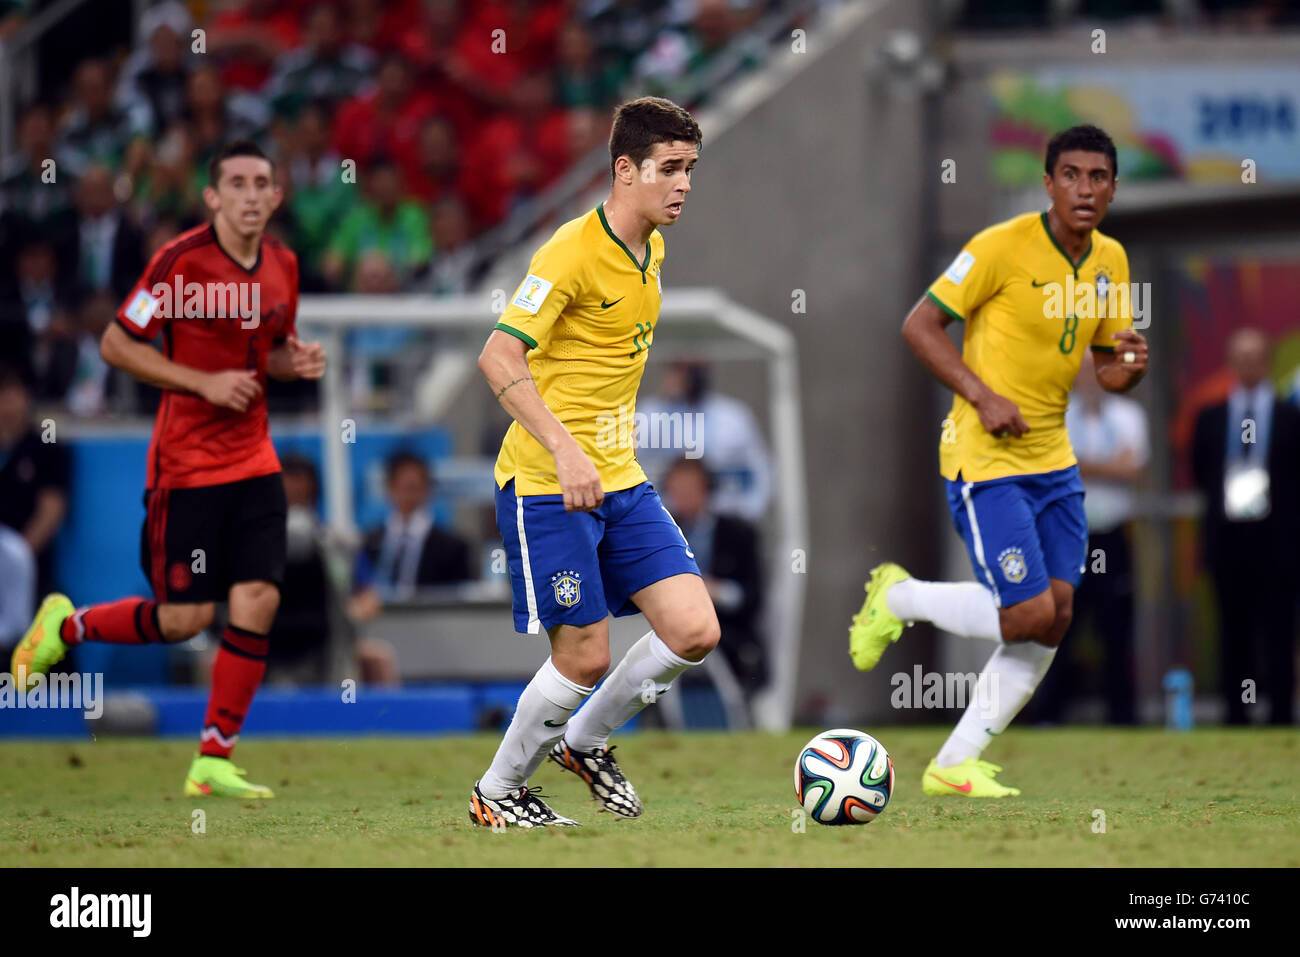 Soccer - FIFA World Cup 2014 - Group A - Brazil v Mexico - Estadio Castelao. Brazil's Oscar Stock Photo